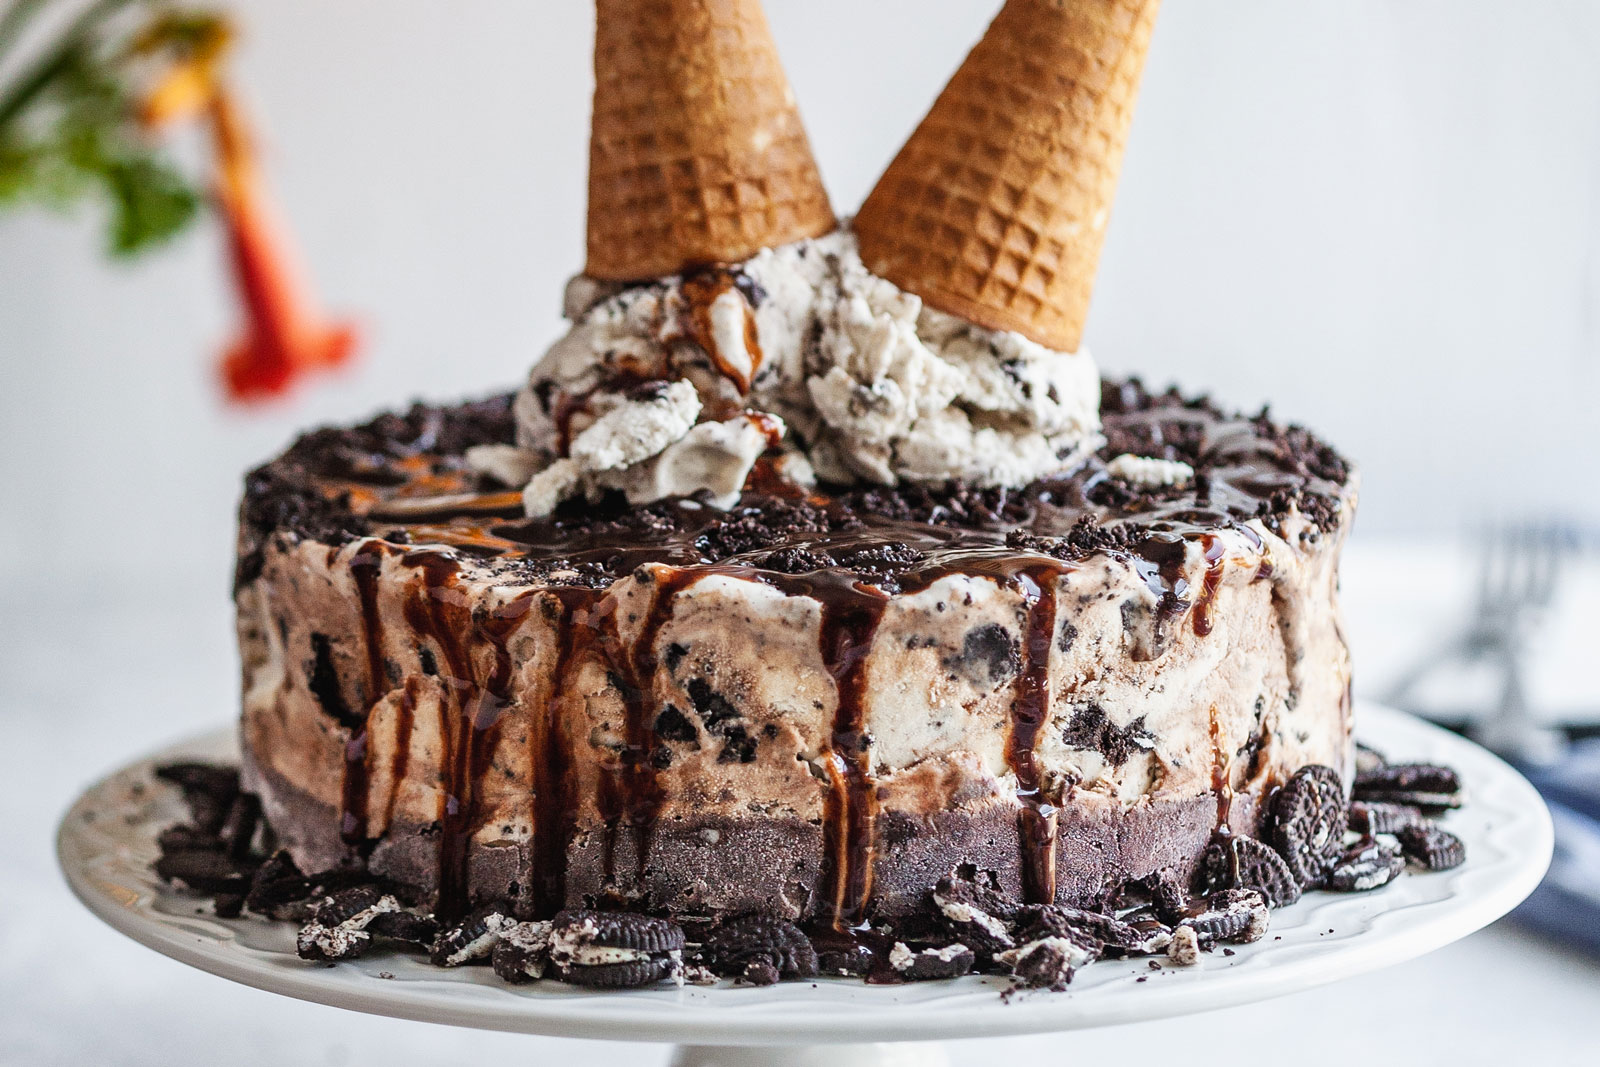 Ice Cream Cake Recipe